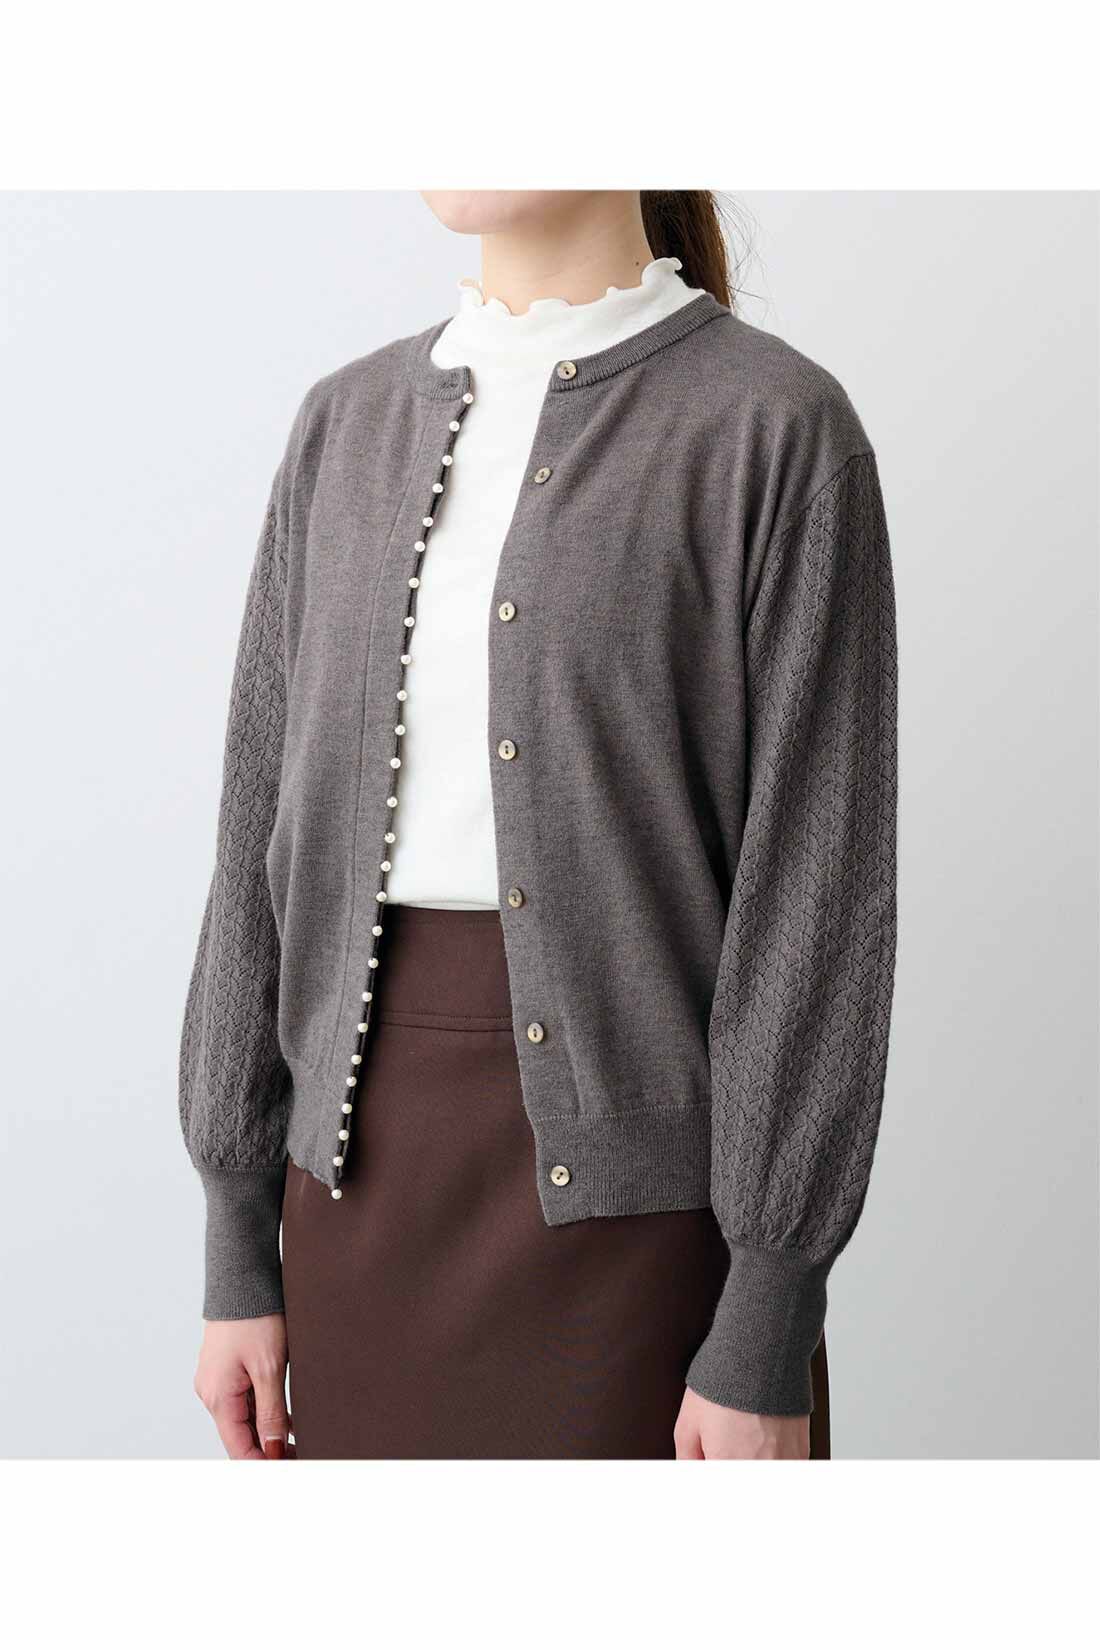 IEDIT[イディット]　アクセサリーみたいなミニパールが上品な 柄編み袖のカーディガン〈グレー〉|※着用イメージです。お届けするカラーとは異なります。